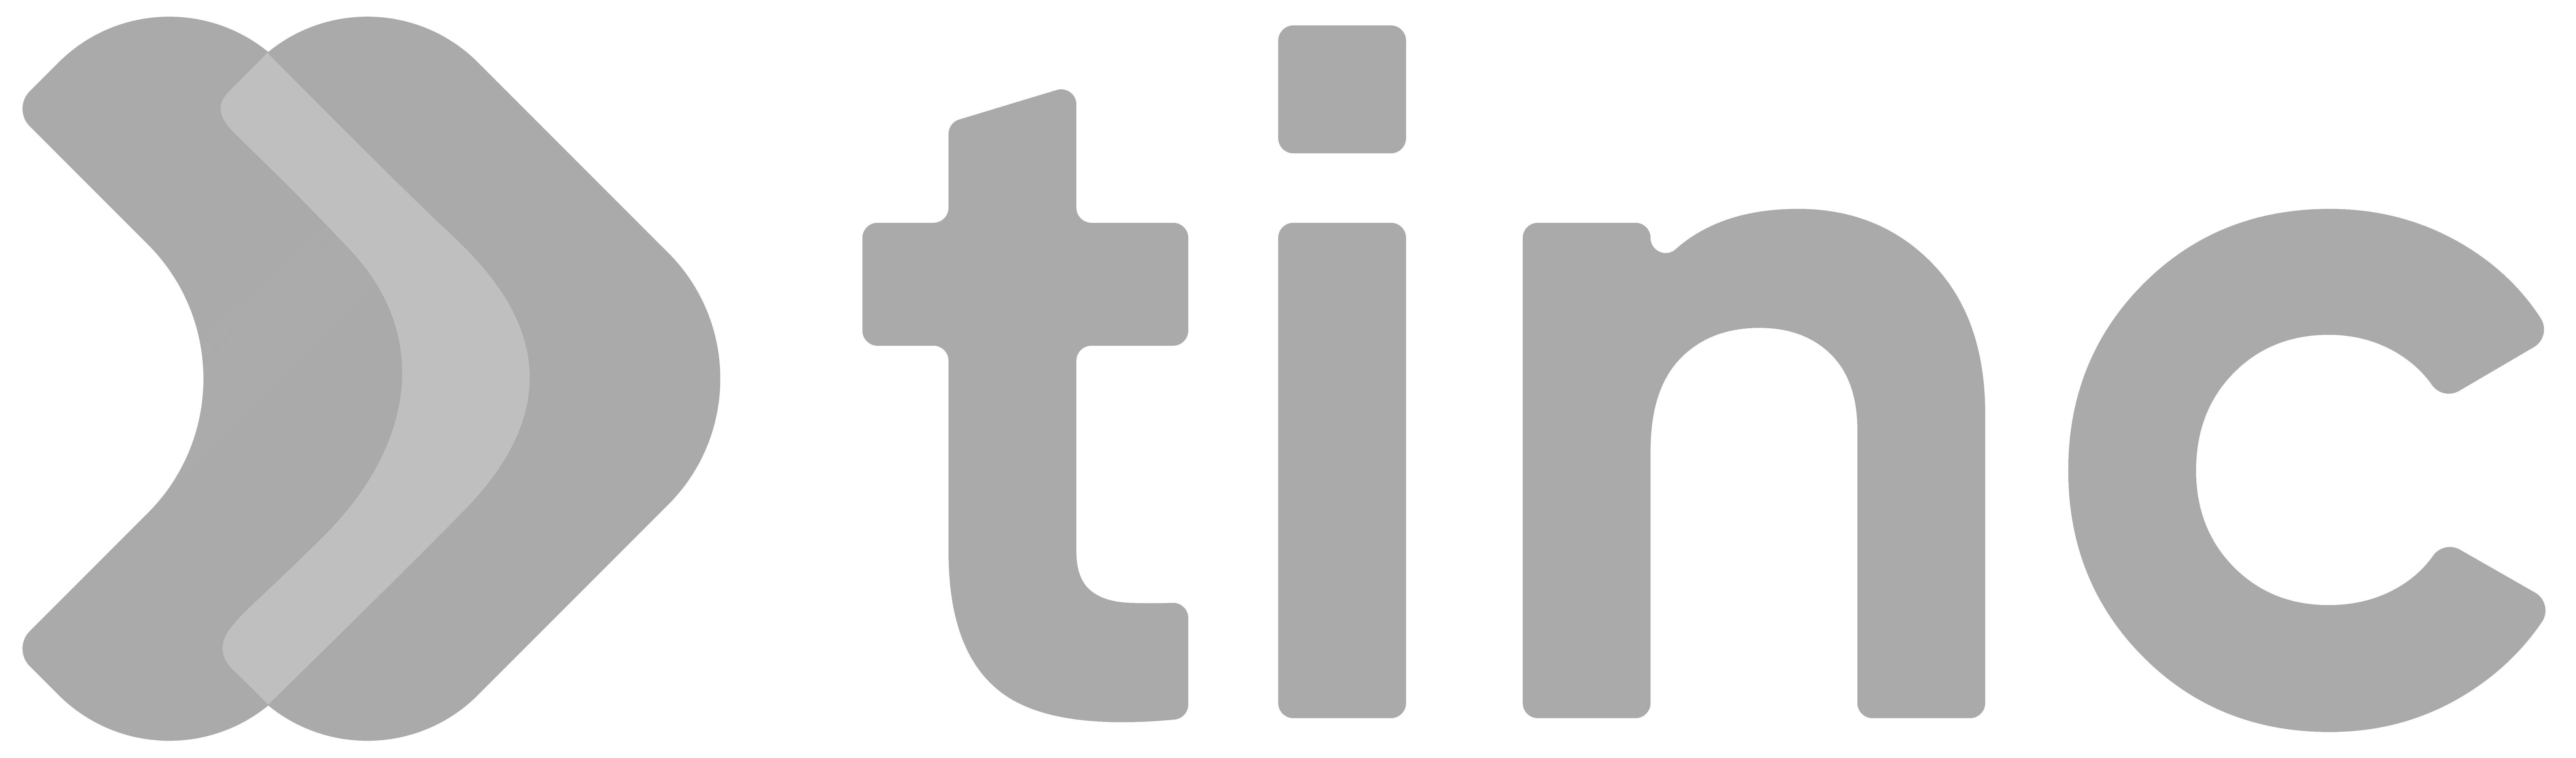 logo-tinc-gray.png